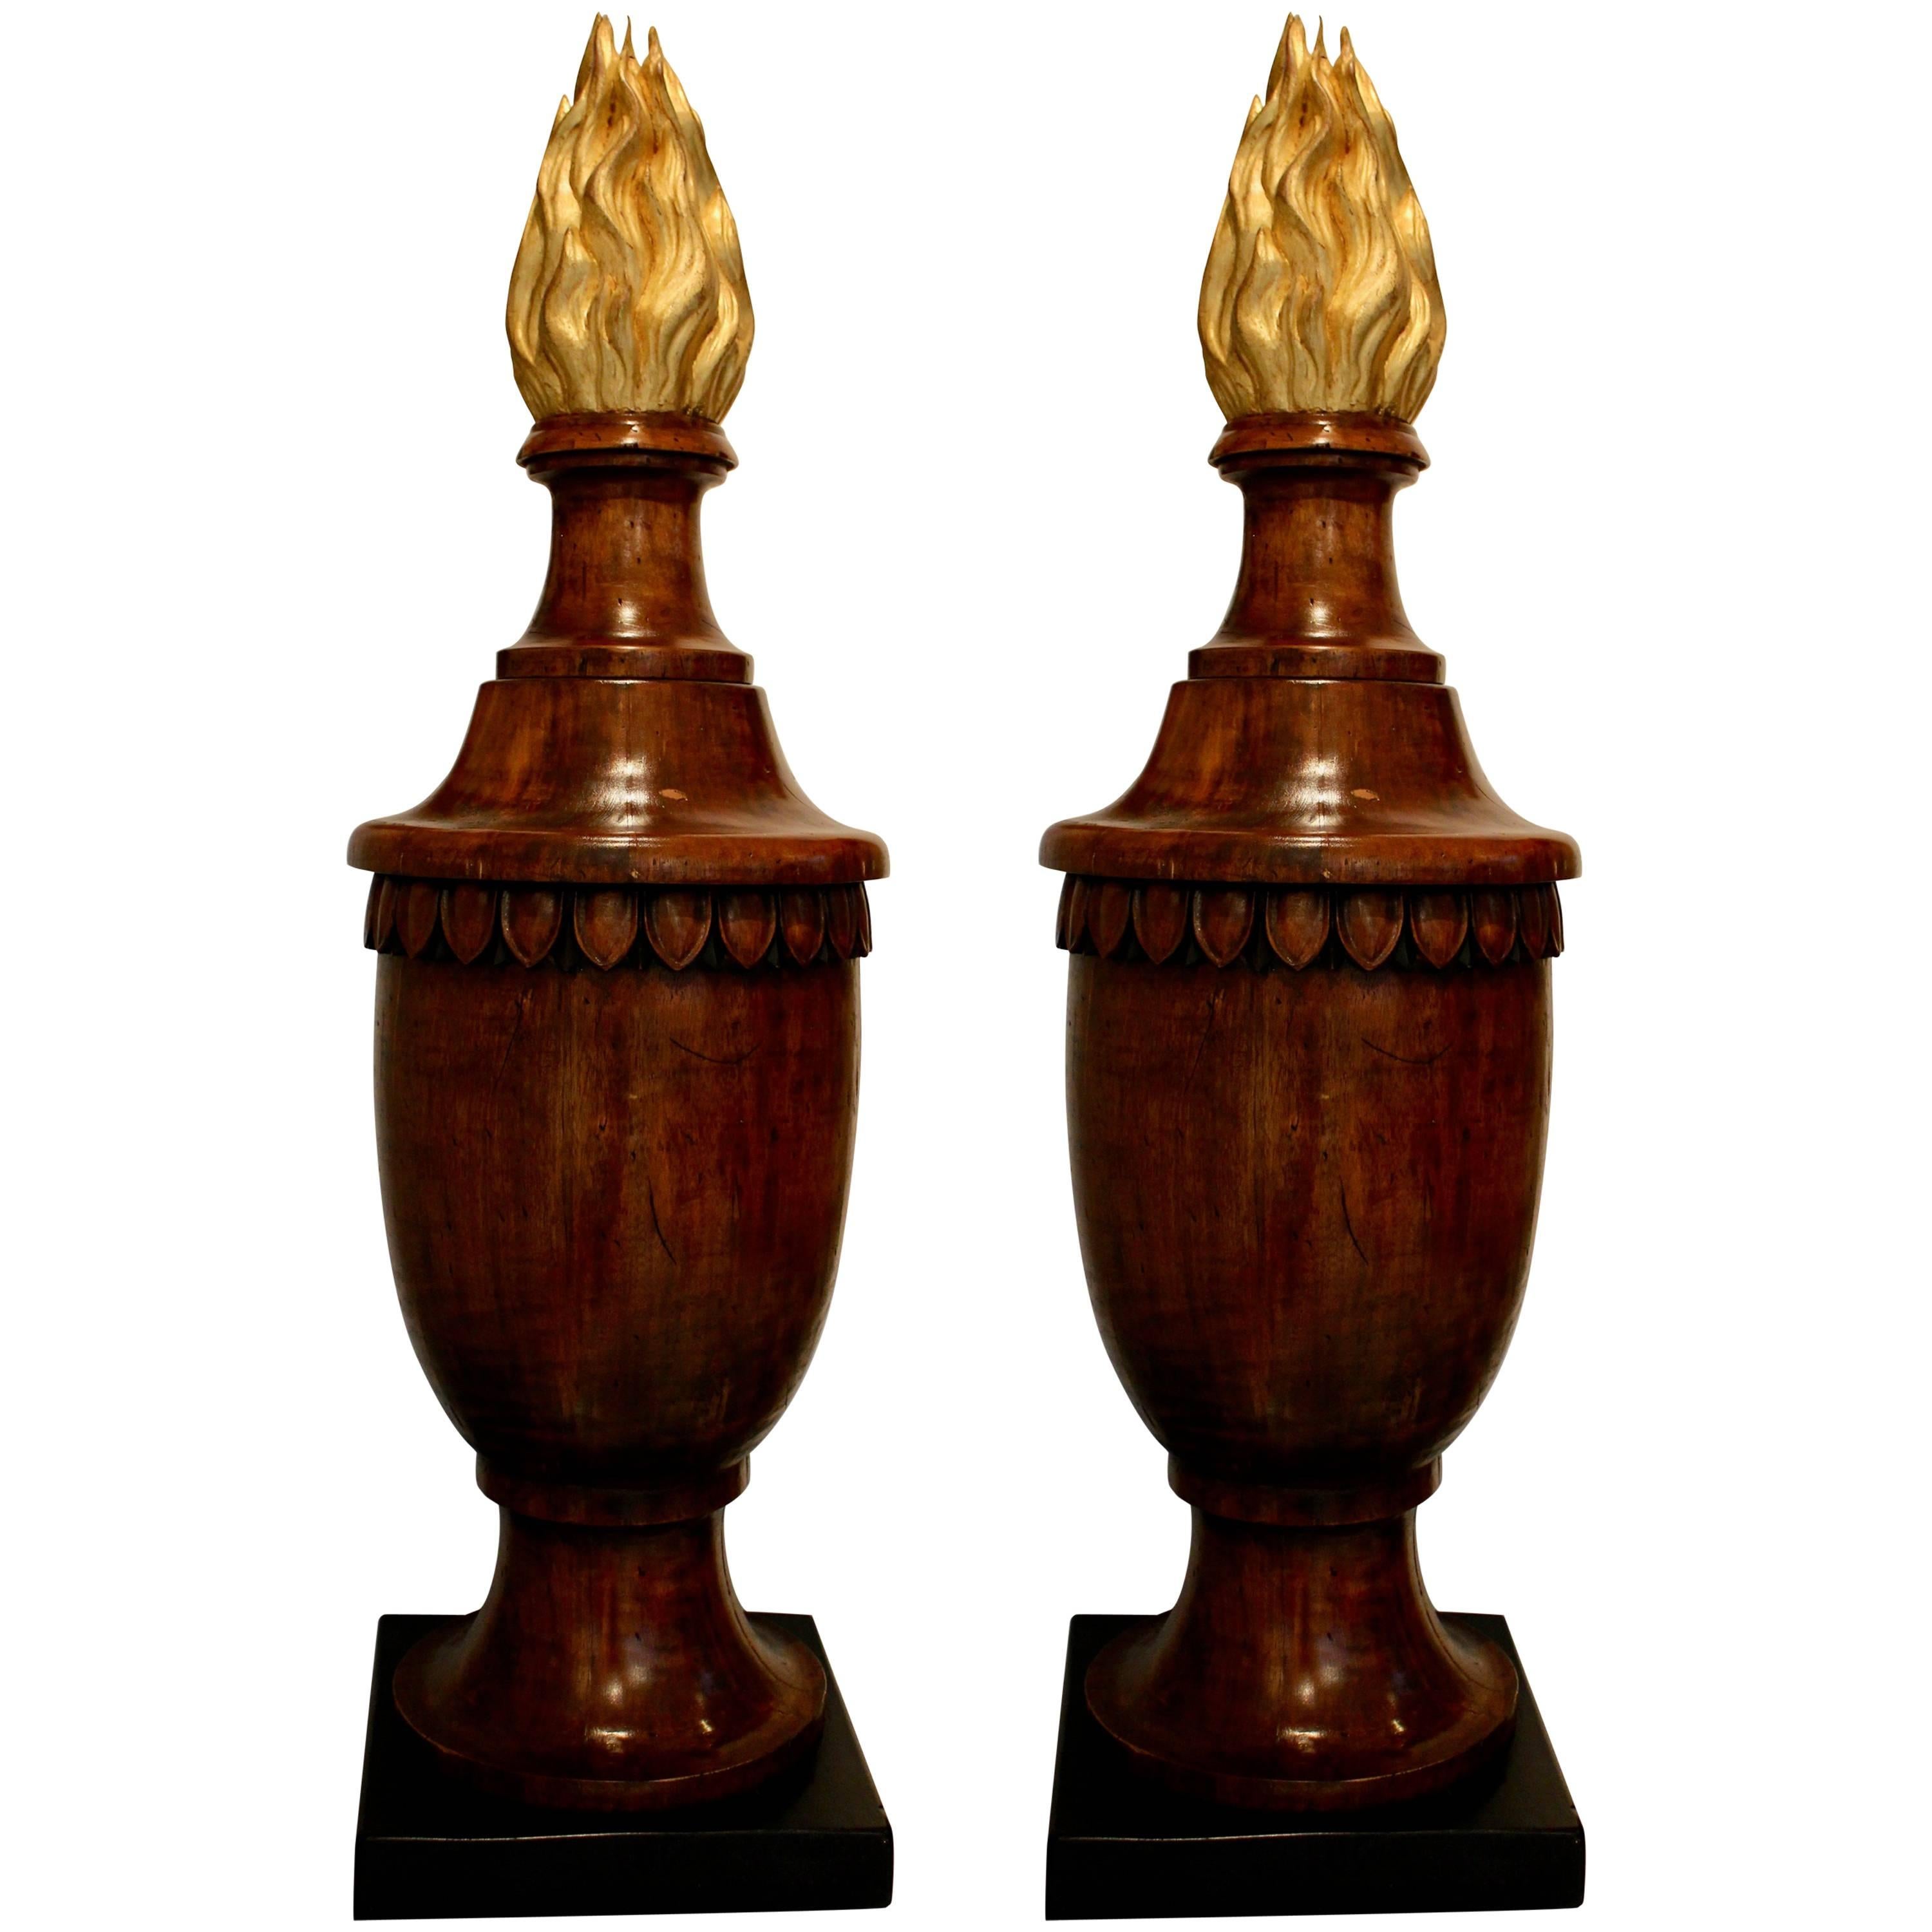 Paire de fleurons en bois de style néoclassique en forme d'urnes